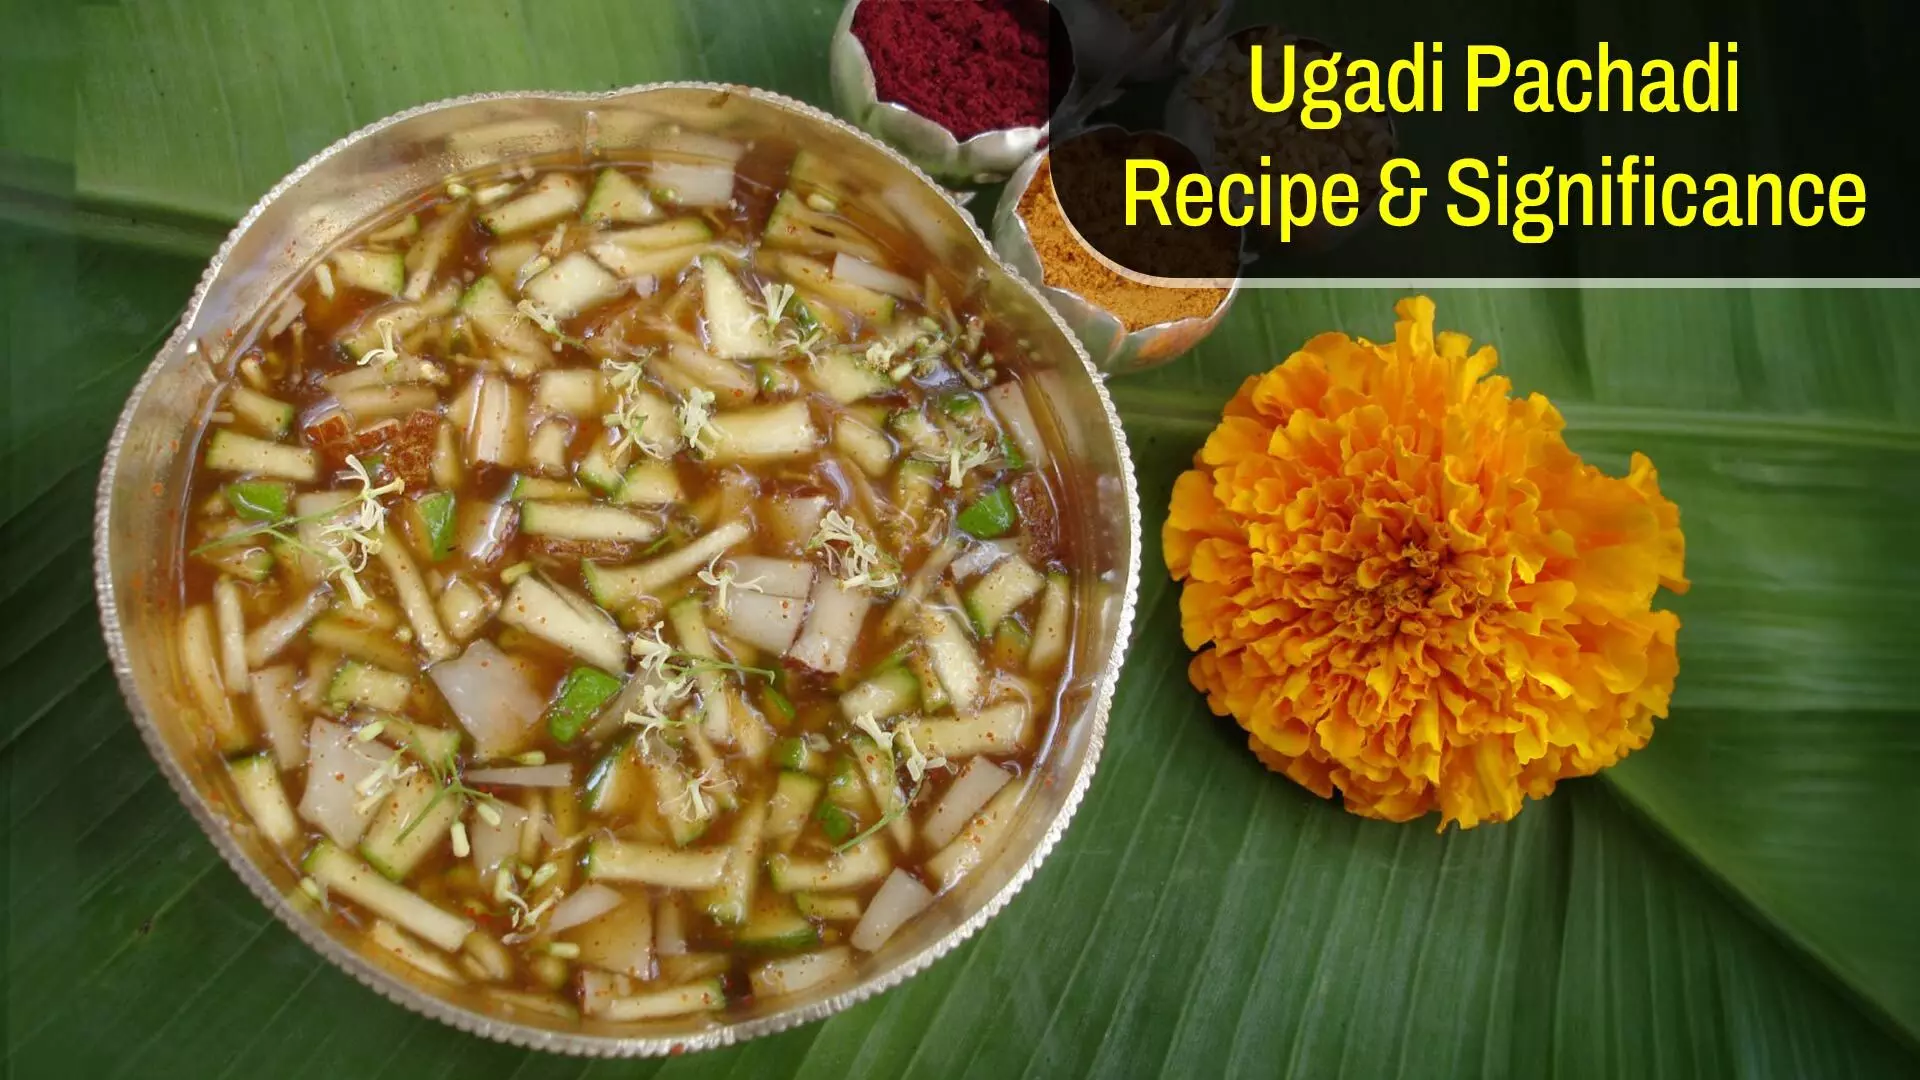 Ugadi: Ugadi Pachadi Recipe & its Significance